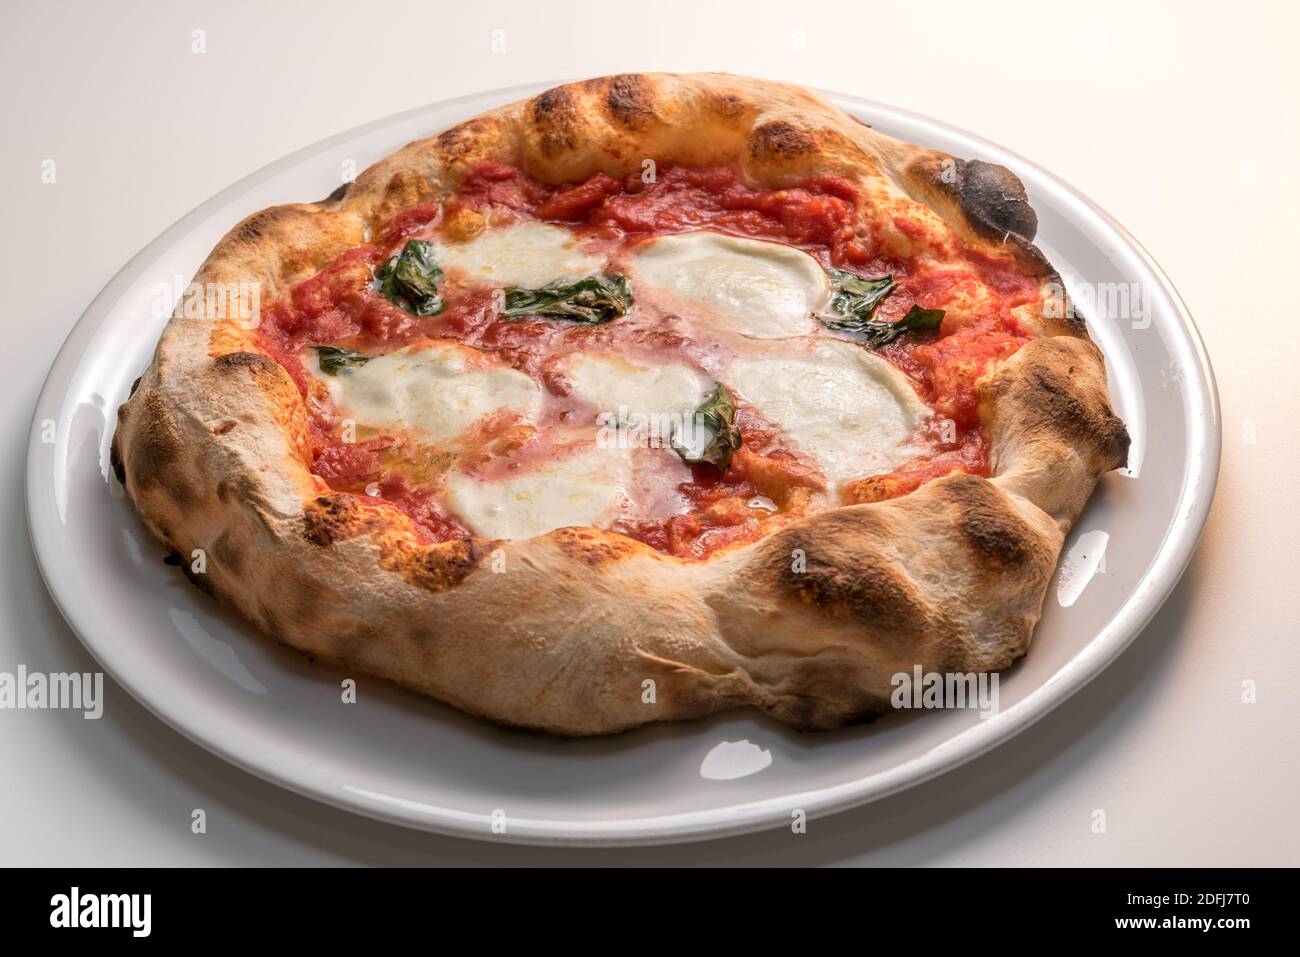 Pizza de Naples, Italie, appelée margherita parce qu'il est dédié à la reine - pizza avec bord croustillant, tomate, mozzarella et basilic dans la plaque blanche Banque D'Images